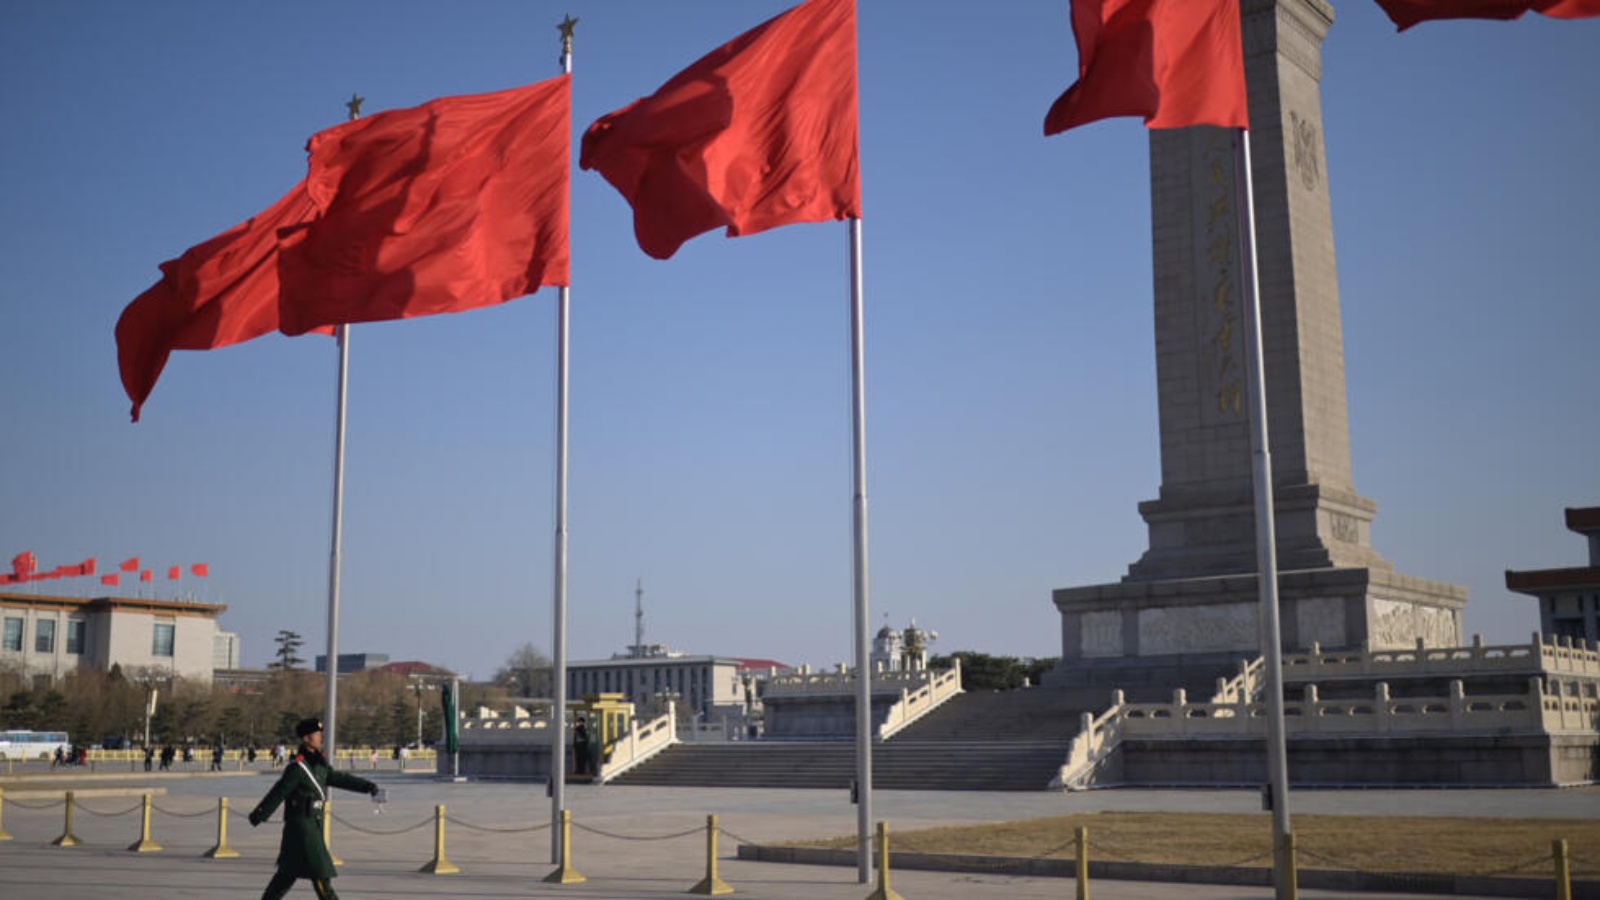 ميدان تيانانمن في بكين في 3 آذار (مارس) قبيل بدء البرلمان الصيني دورته السنوية